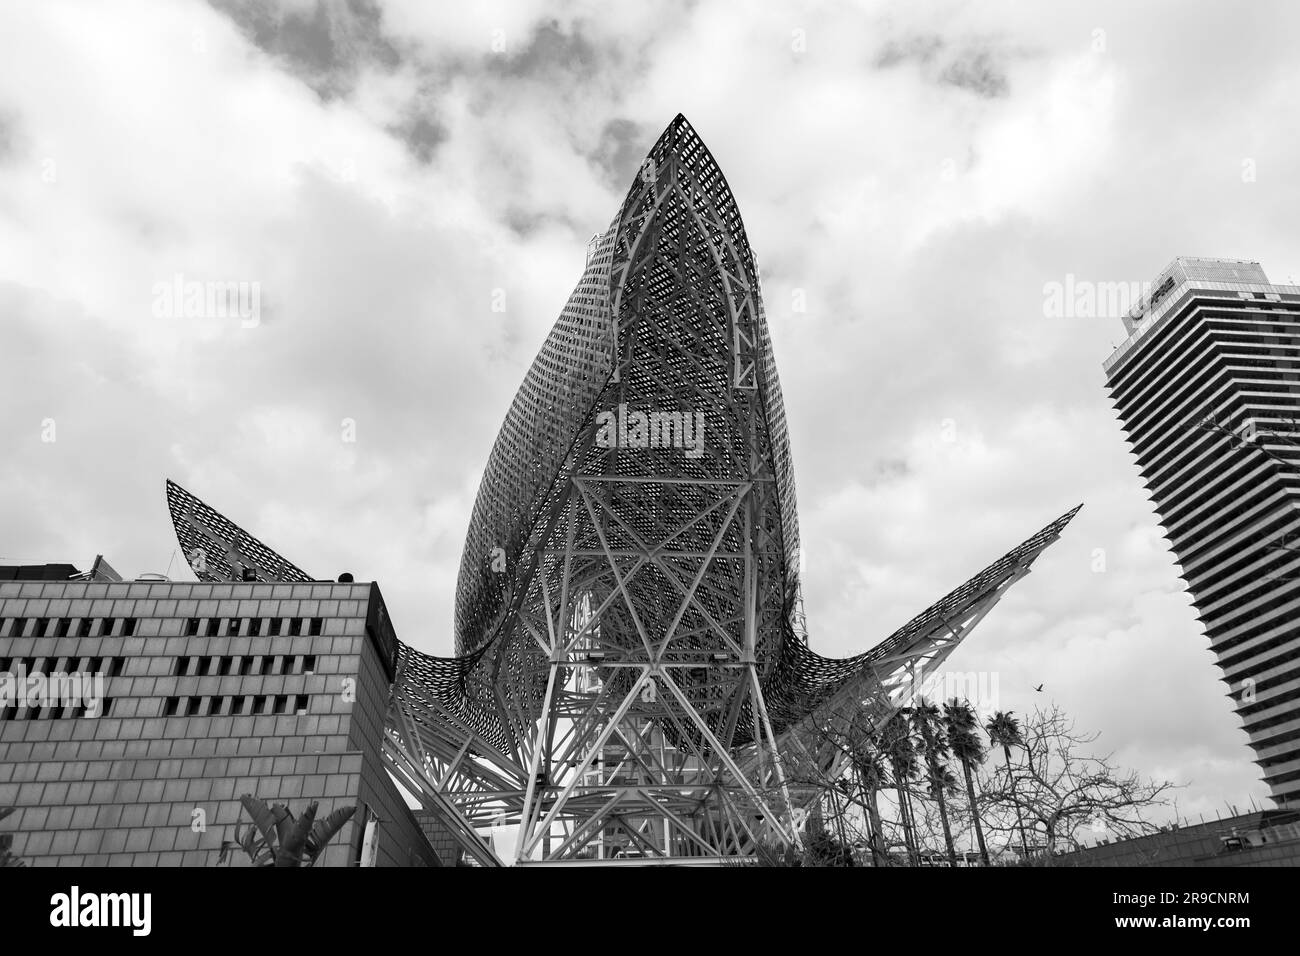 Barcelone, Espagne - 13 FÉVRIER 2022 : la sculpture géante de poissons d'or, El Peix de Frank Gehry, située sur le port Olypmique de Barcelone, Catalogne, Espagne. Banque D'Images